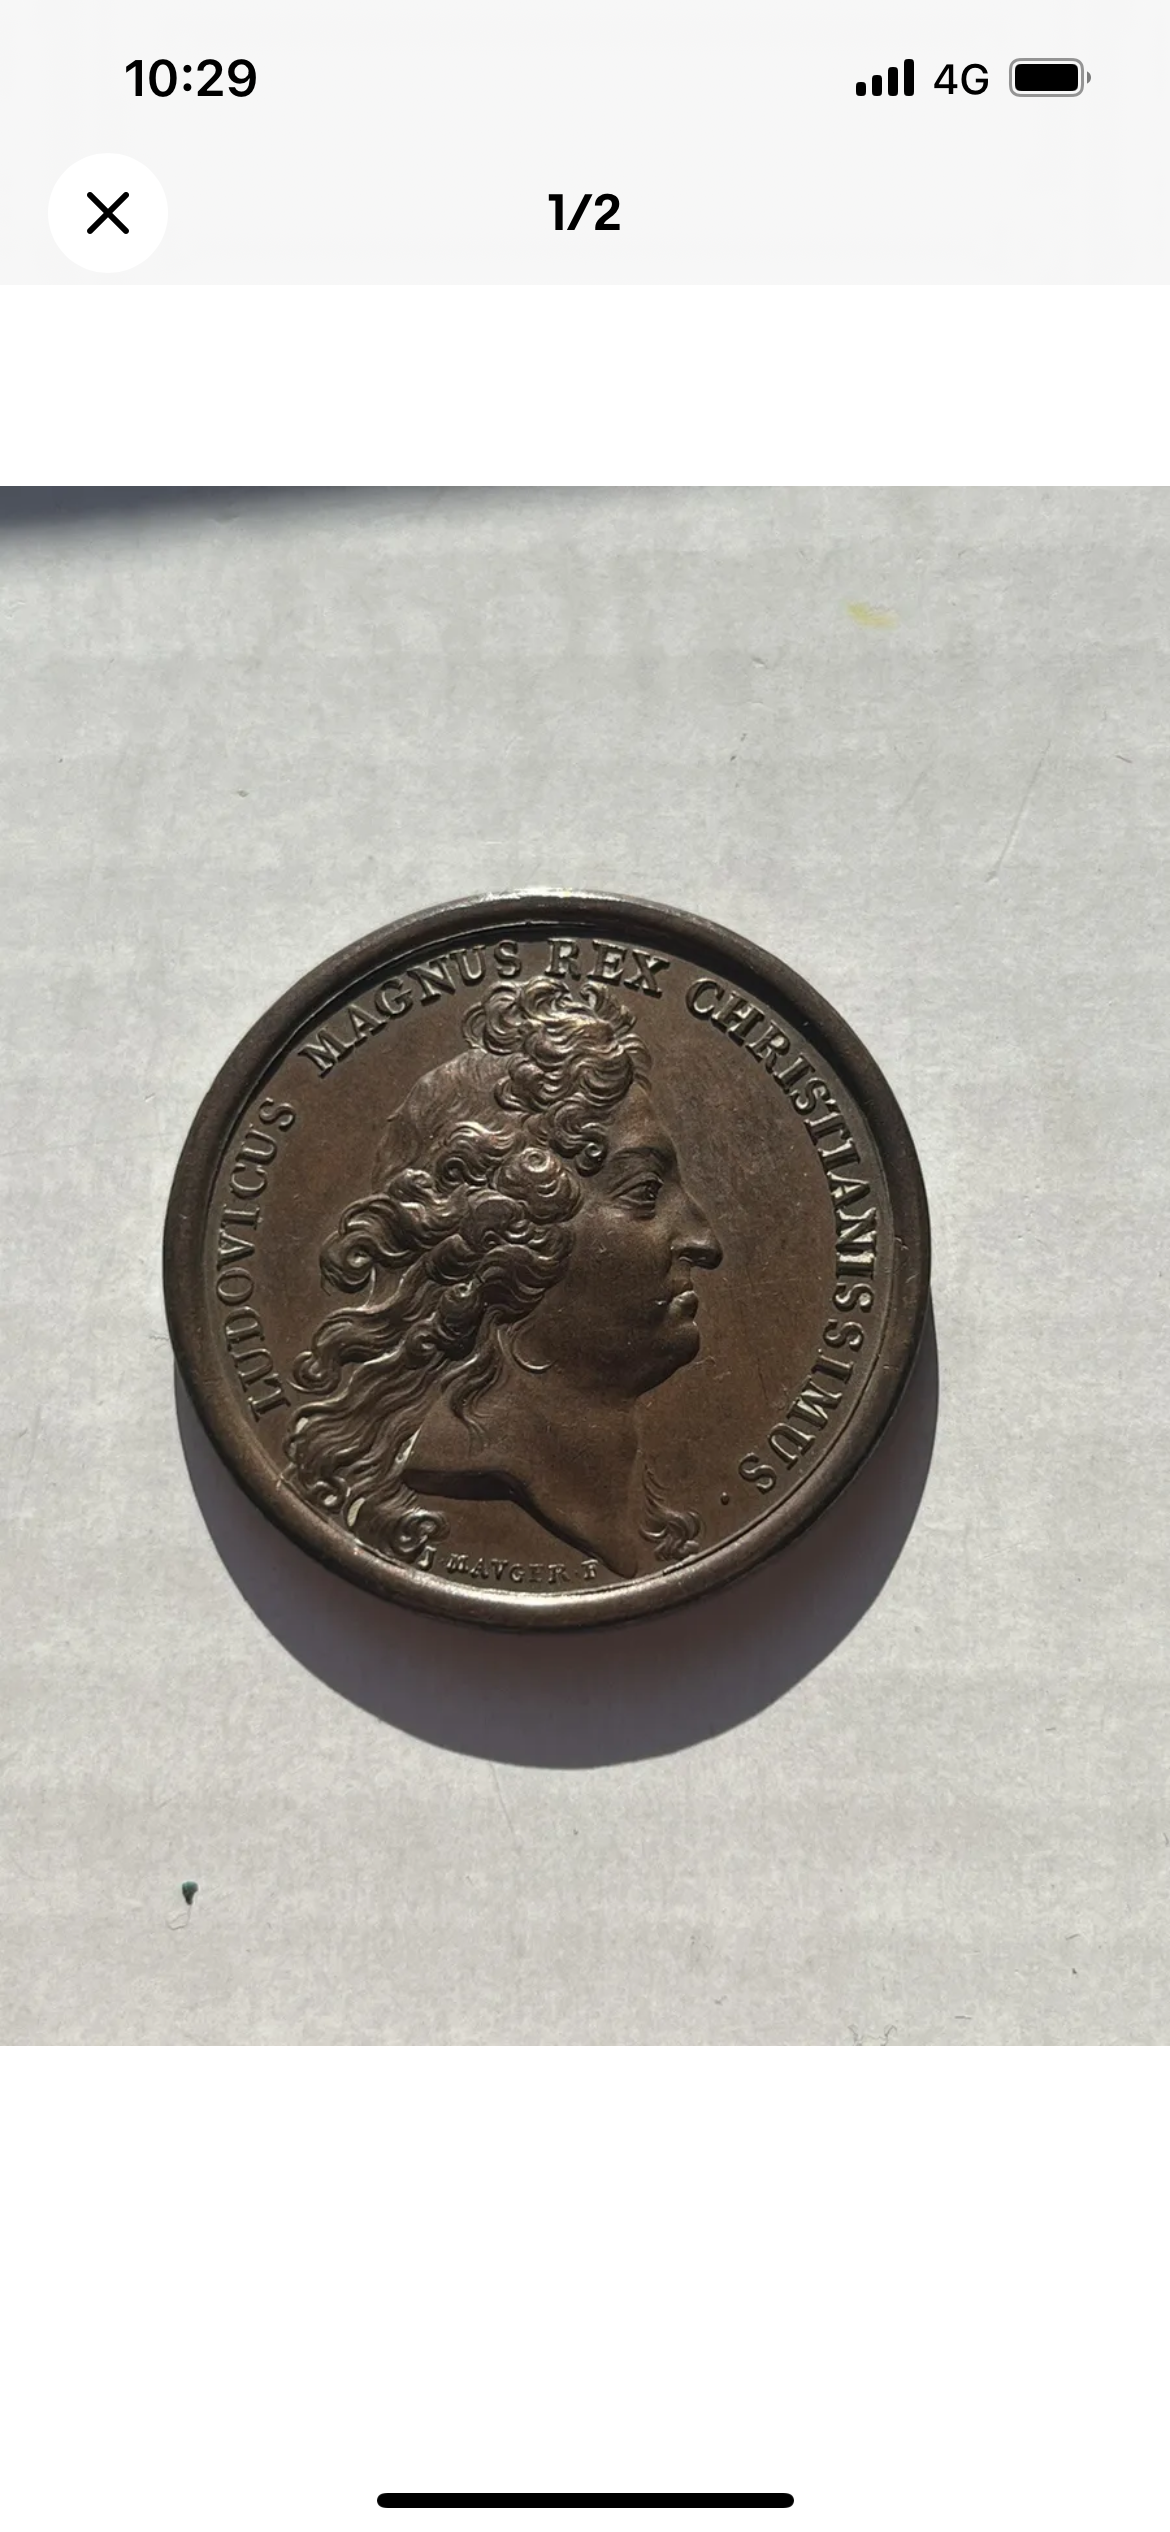 Médaille Mauger de Louis XIV Algérie paix d’Alger 1683 originale